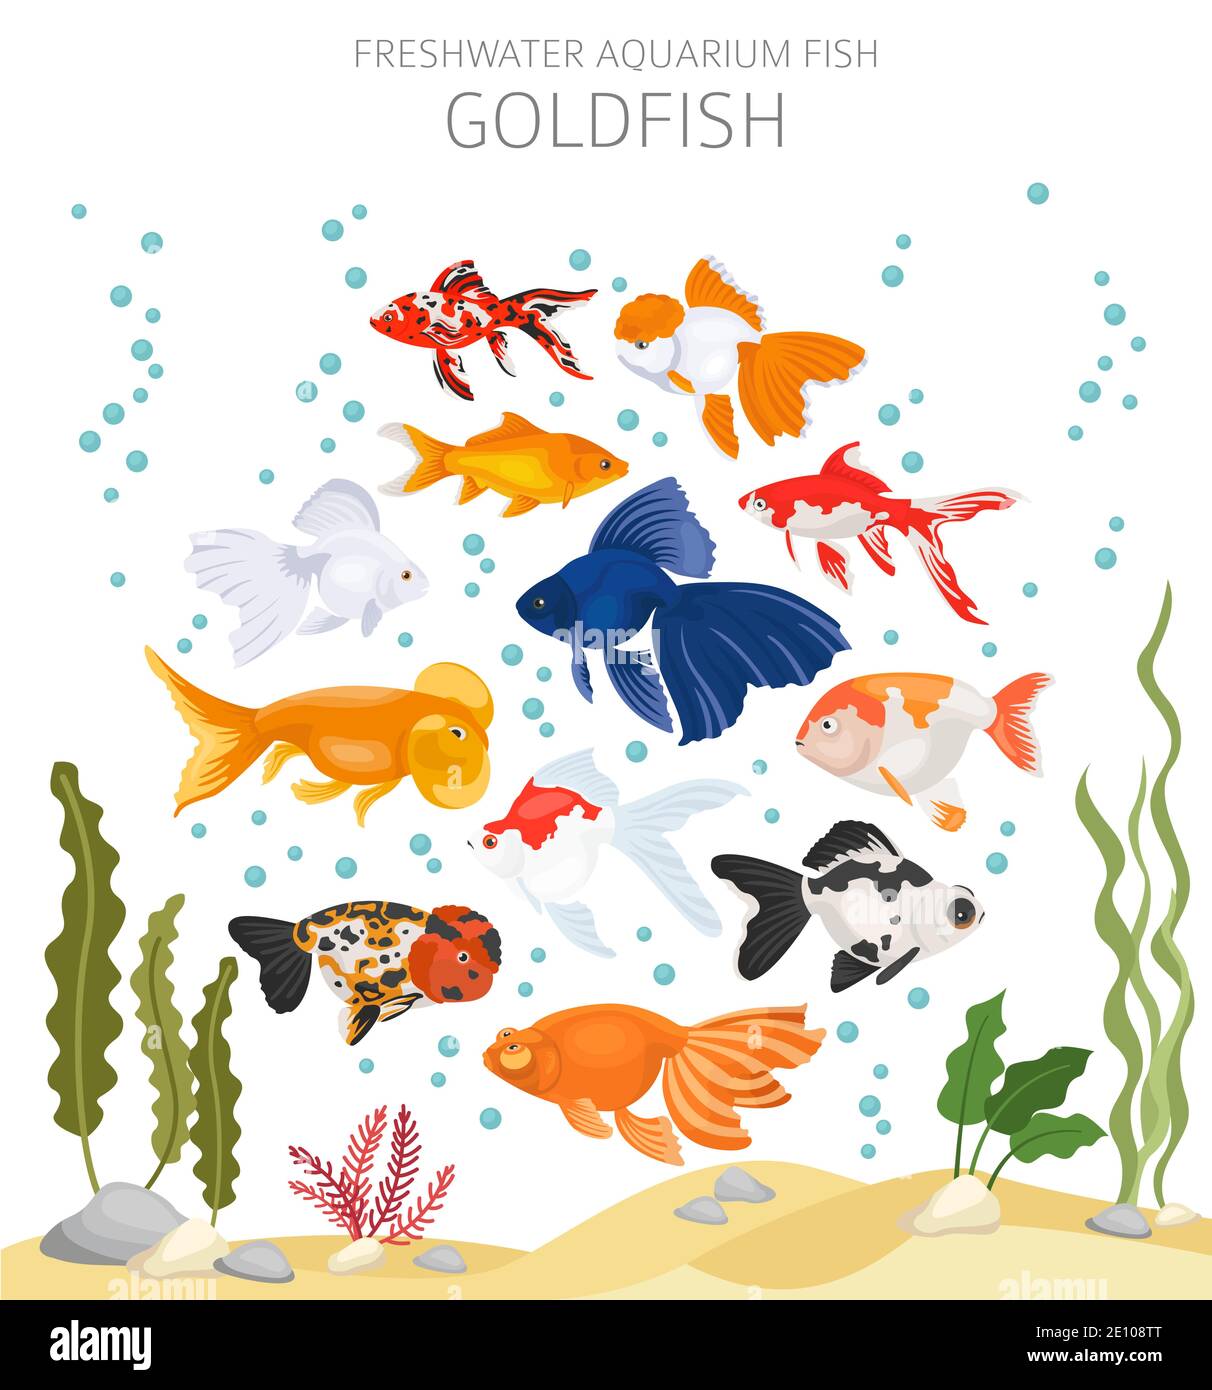 Goldfisch. Süßwasseraquarium Fisch Symbol Set flach Stil isoliert auf weiß. Vektorgrafik Stock Vektor